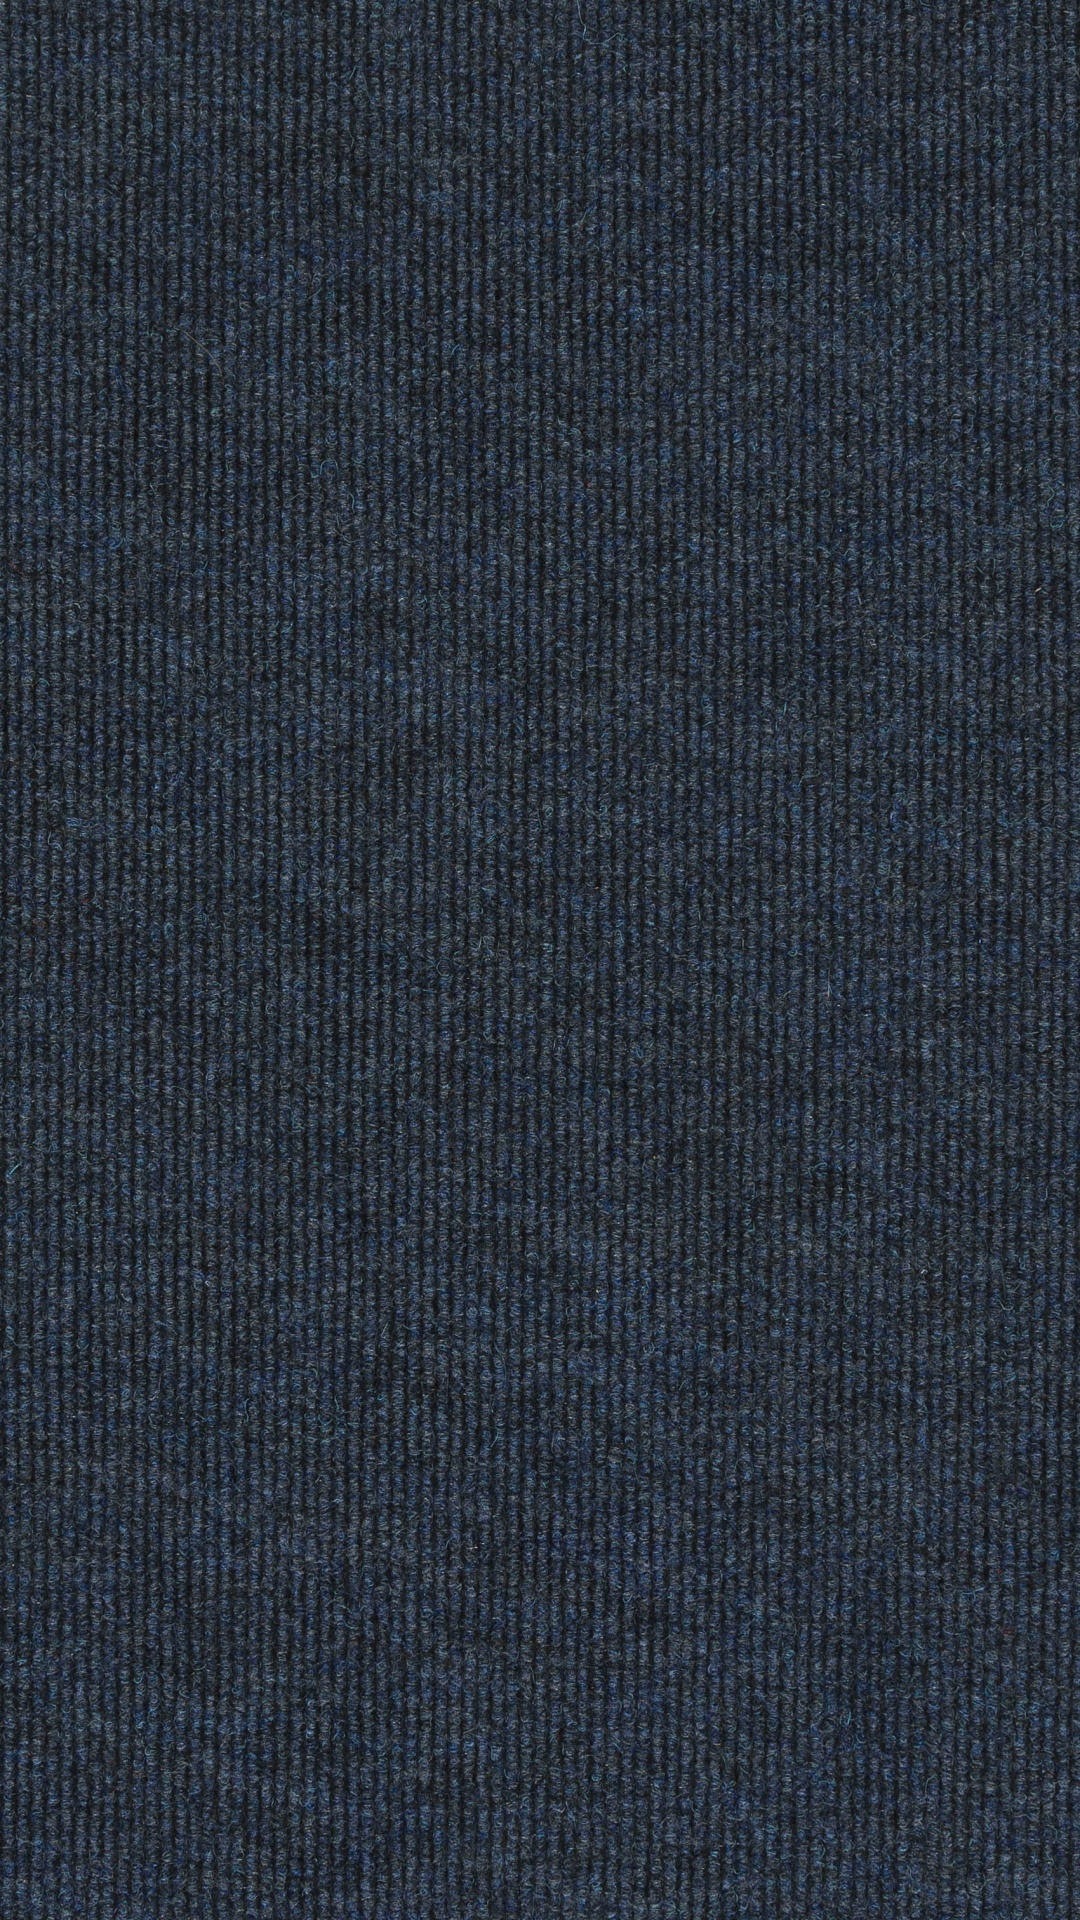 Textil Azul Con Fondo Negro. Wallpaper in 1080x1920 Resolution